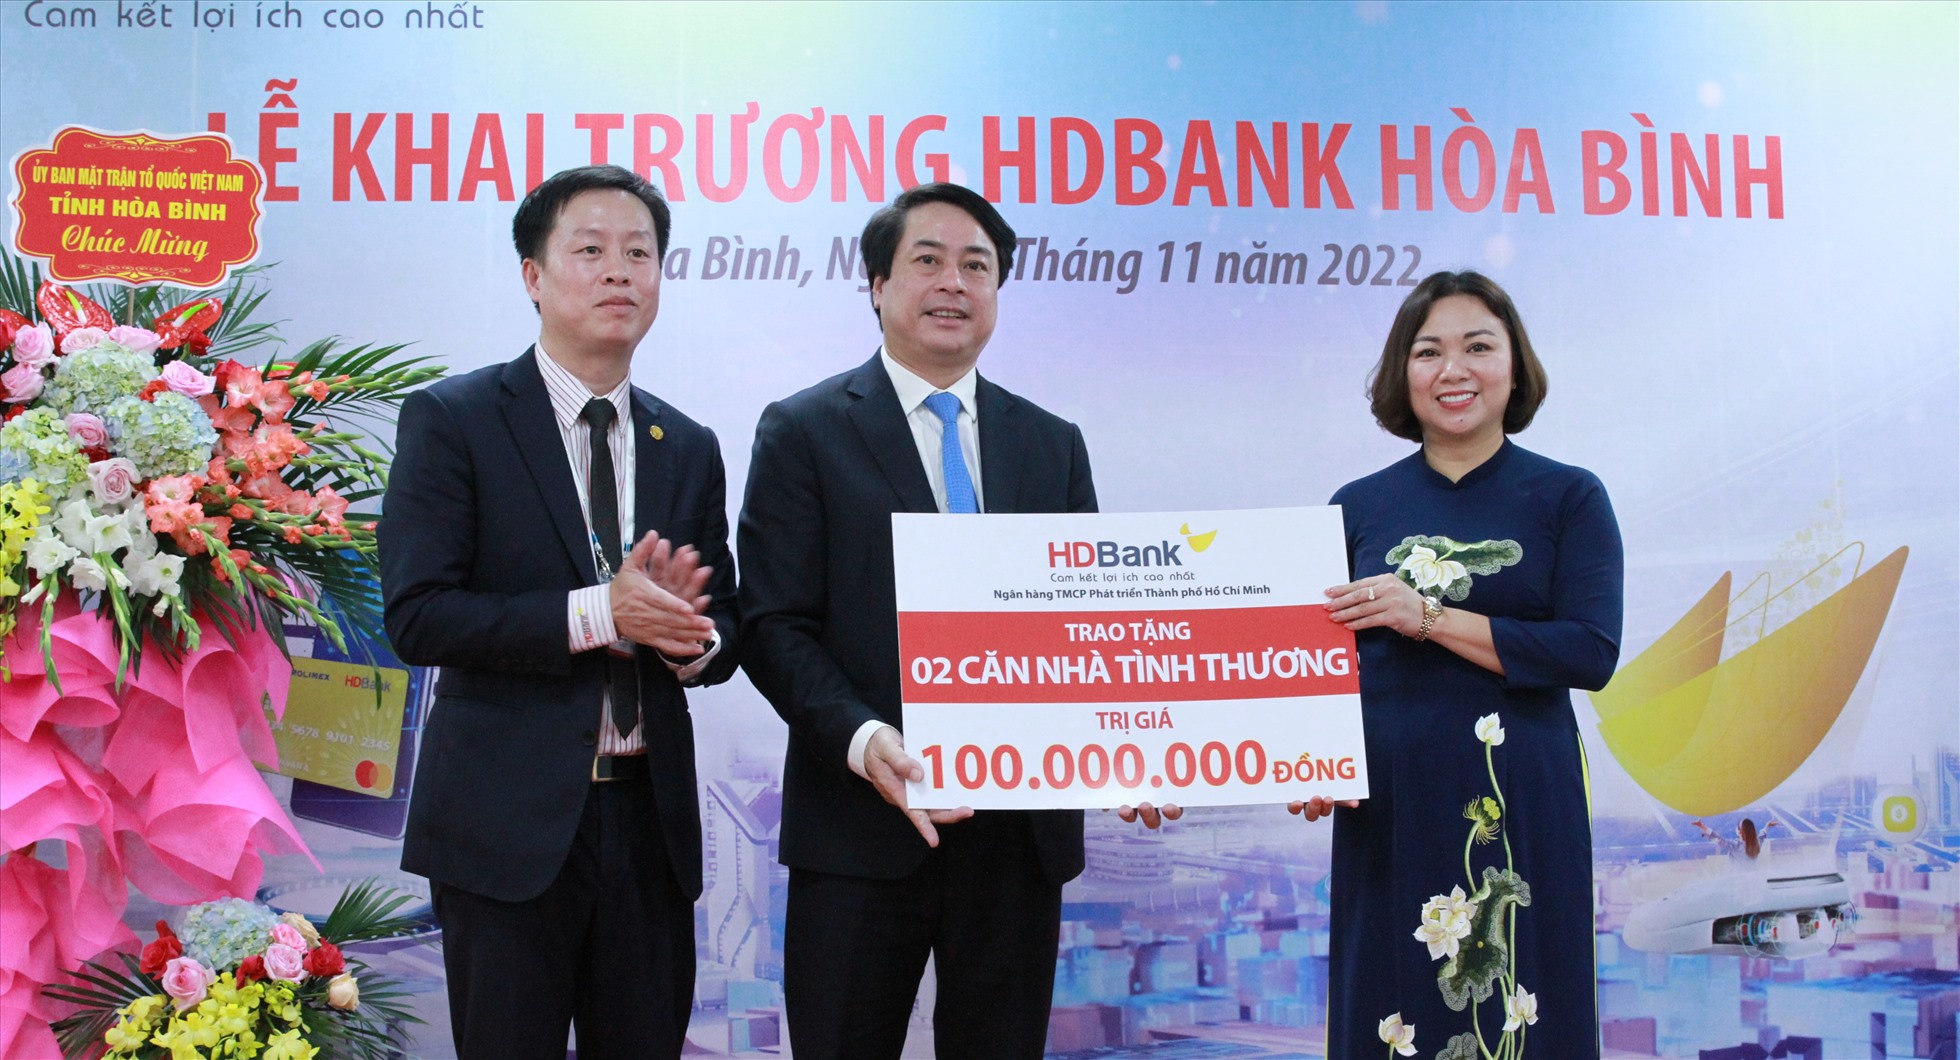 HDBank Hòa Bình khai trương tháng 11.2022, mang đến một sự lựa chọn mới cho người dân. Nguồn: HDBank